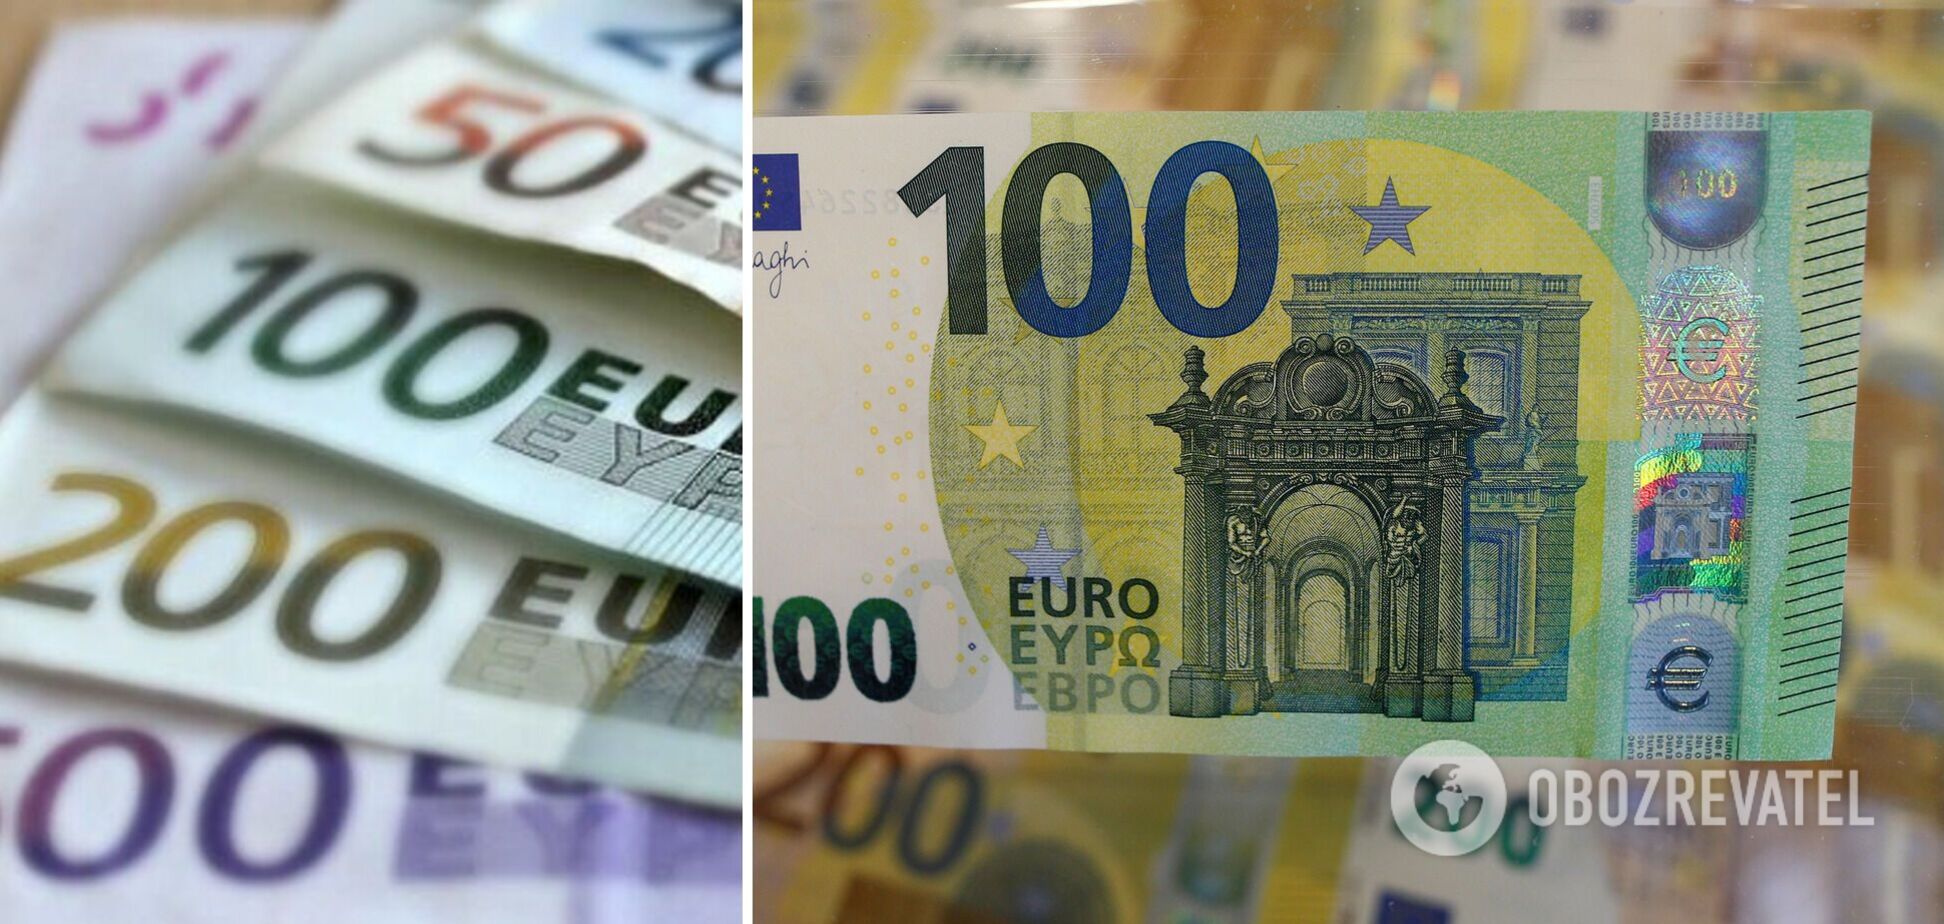 Українці можуть отримати фальшиві євро